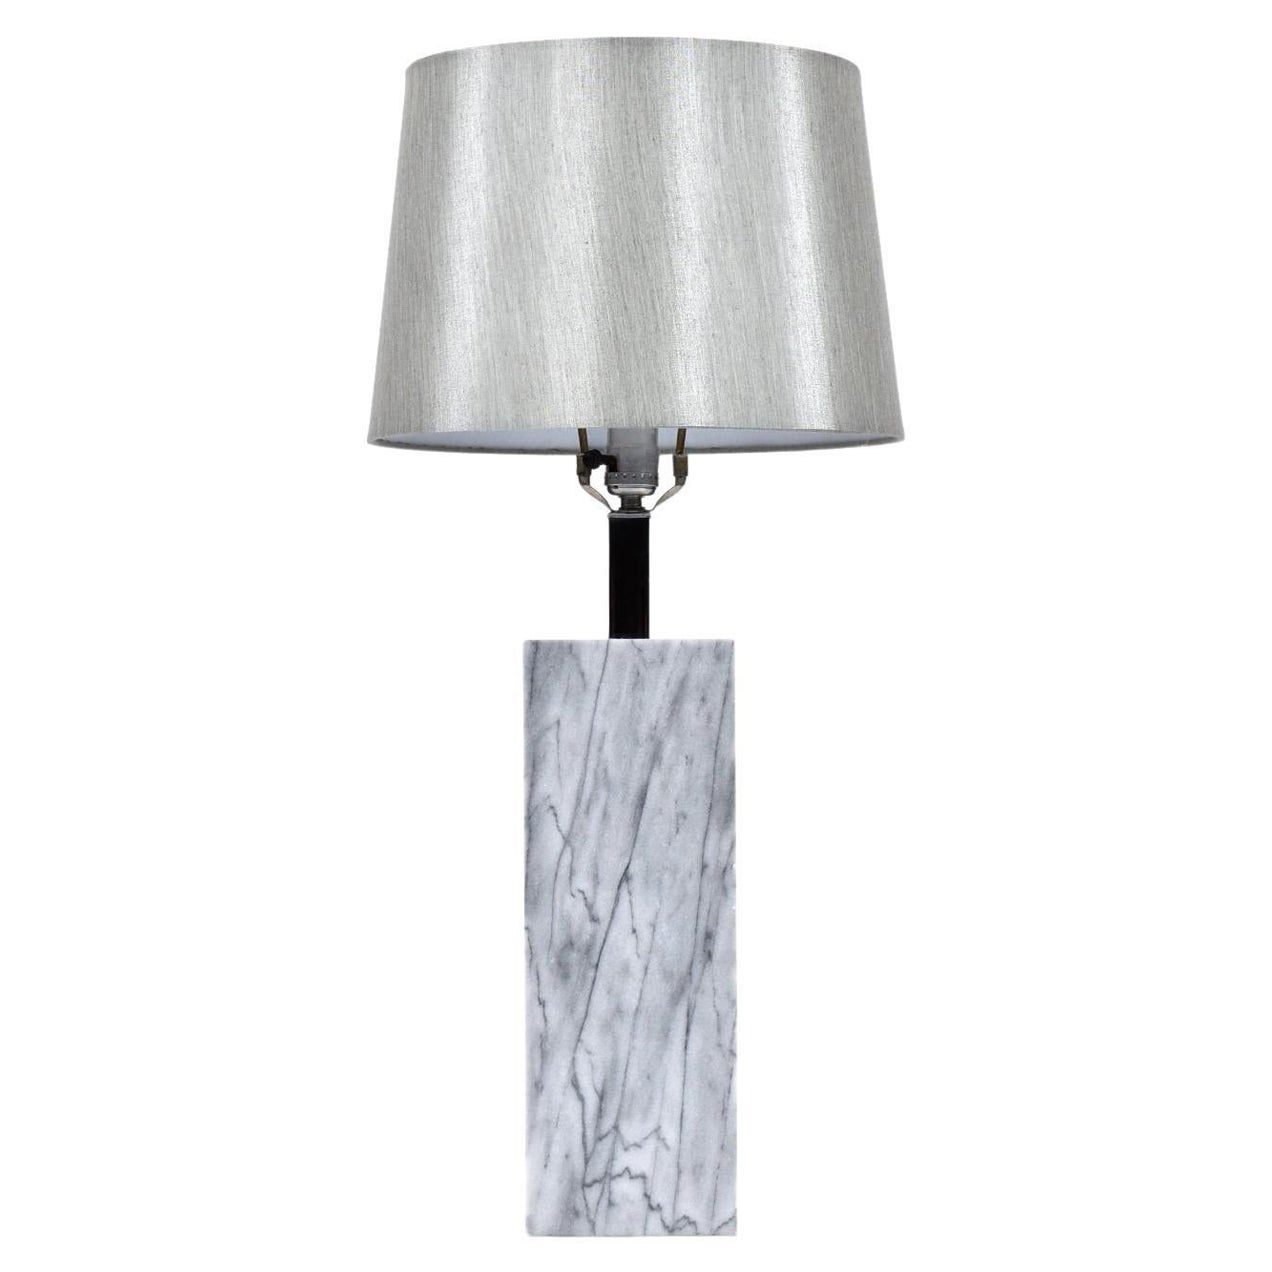 Tischlampe aus grauem Marmor im Nessen-Stil mit Chromhalsausschnitt und silbernem Schirm